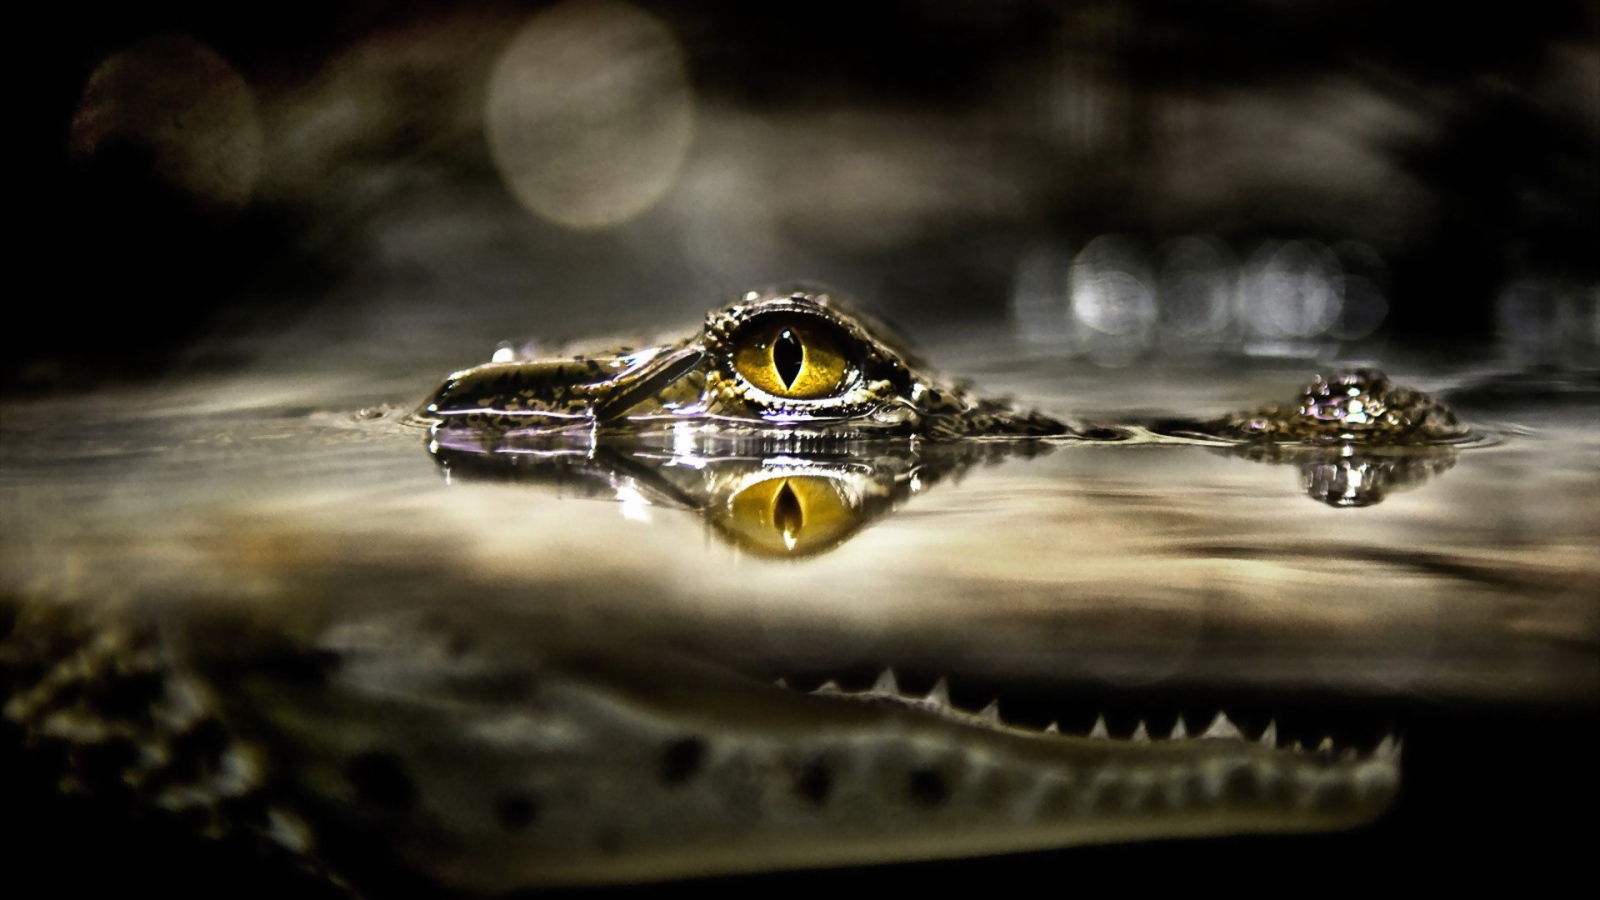 Глаз крокодила над водой